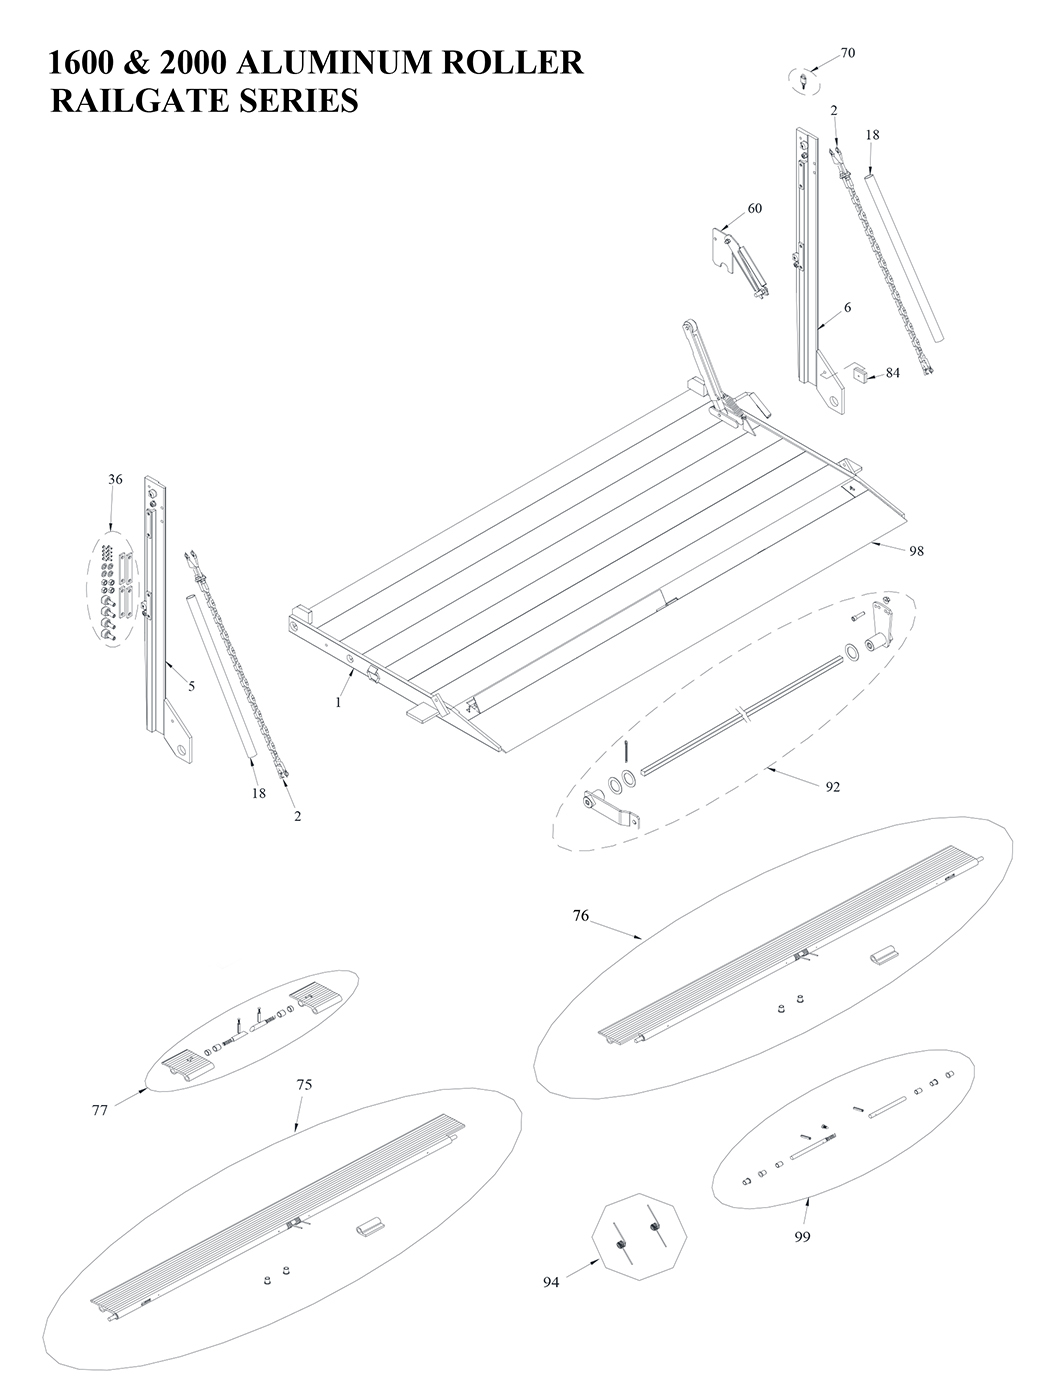 Tommy Gate Railgate Series RTC Diagram (2 OF 2) [Step Van]